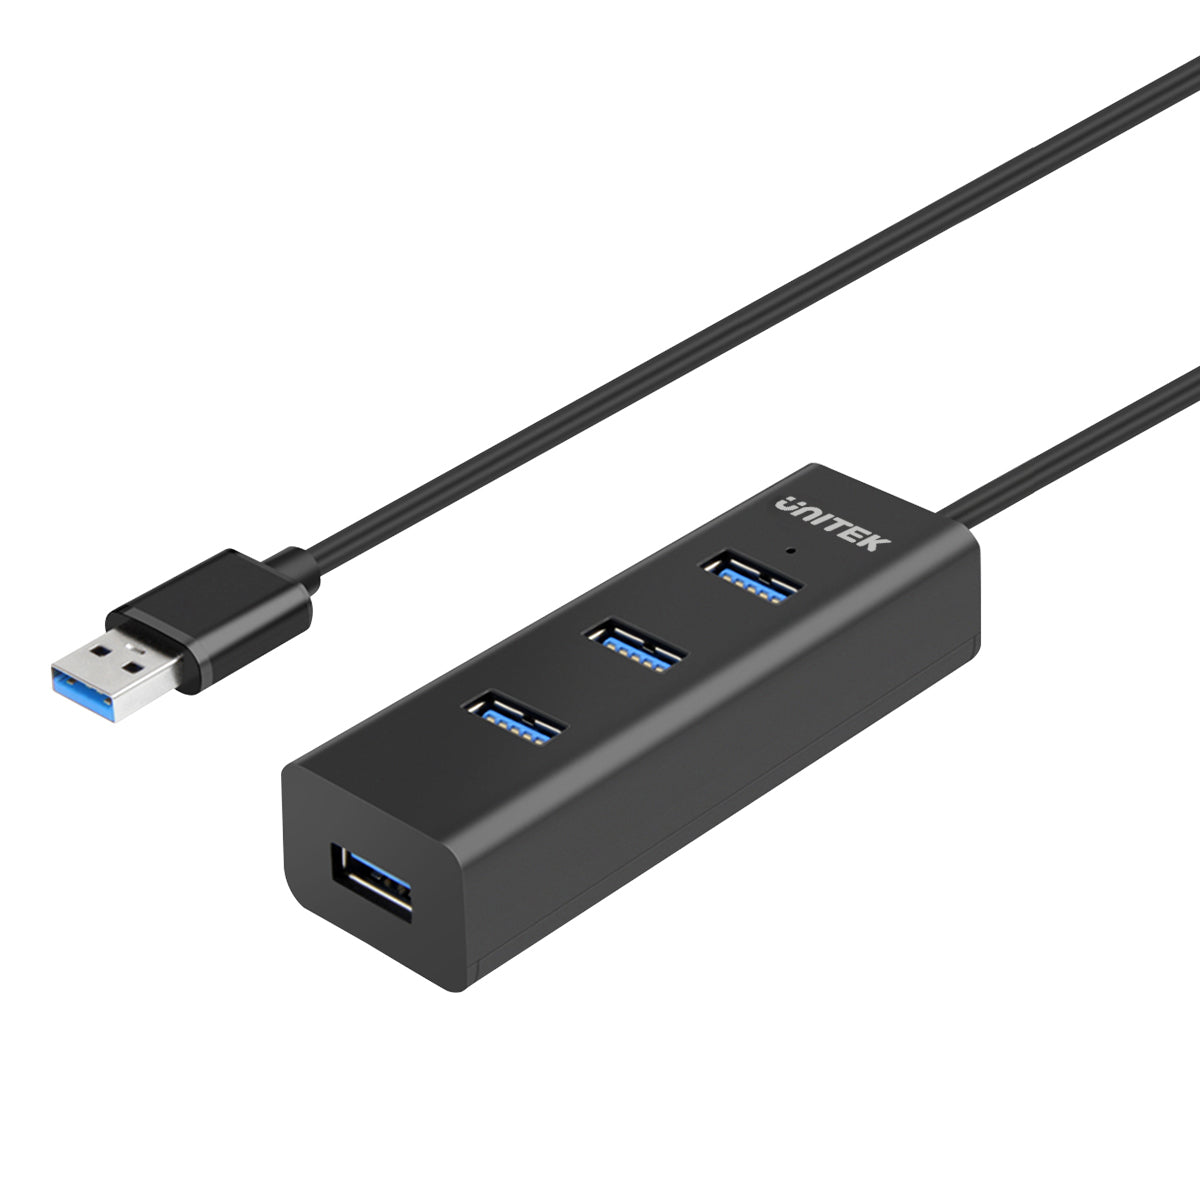 ICY IB-TS401-4: USB 3.0 4-Port Einbau-Hub, schwarz bei reichelt